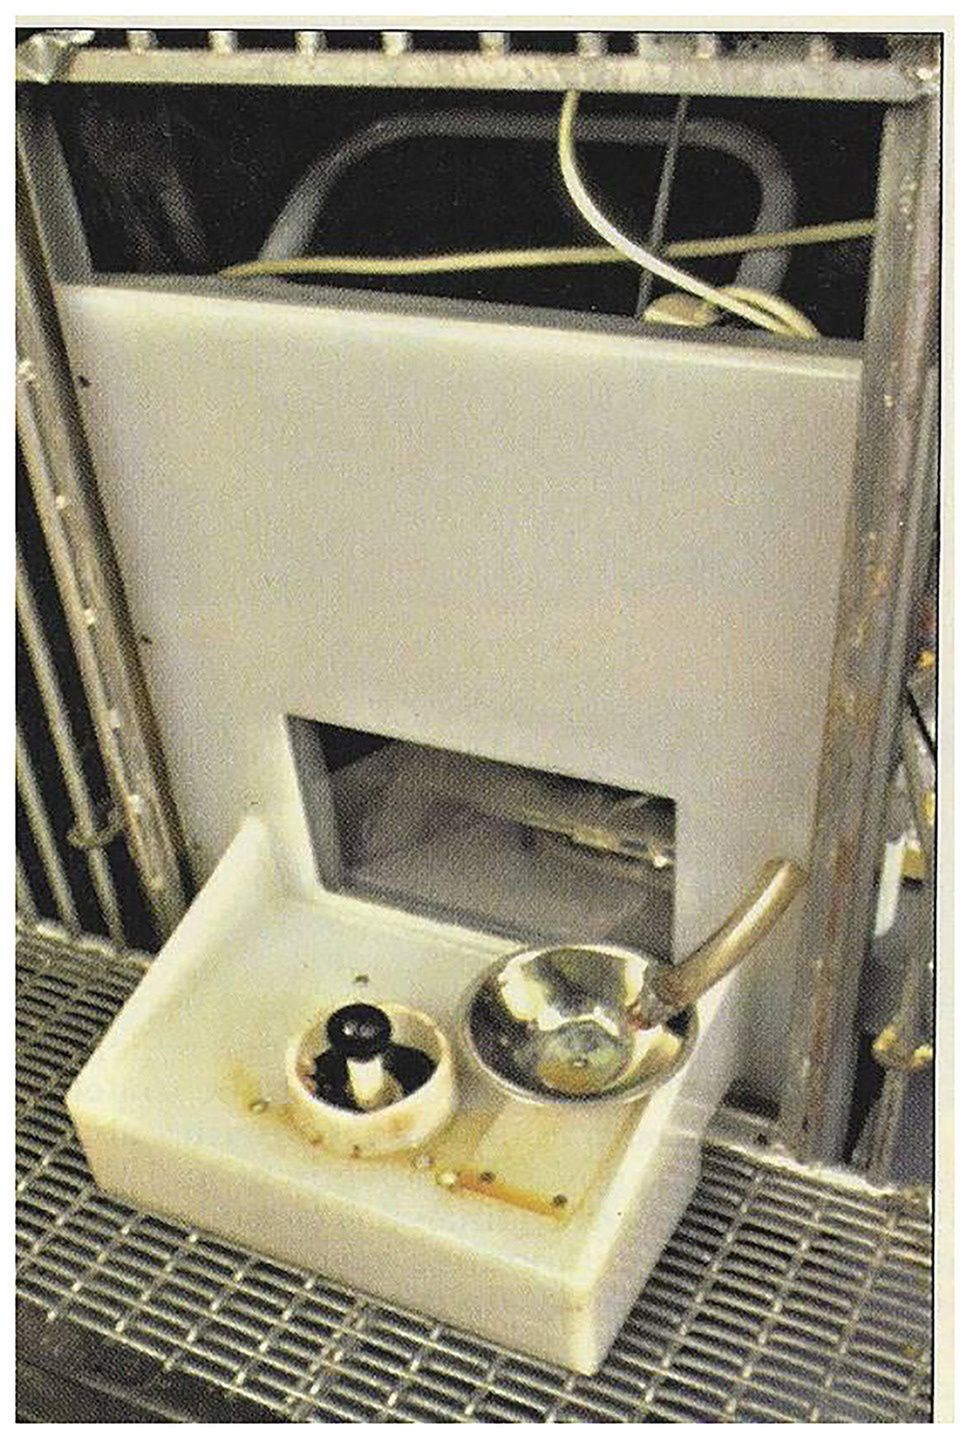 Joystick i automatyczny podajnik jedzenia dla świń w eksperymencie amerykańskich naukowców